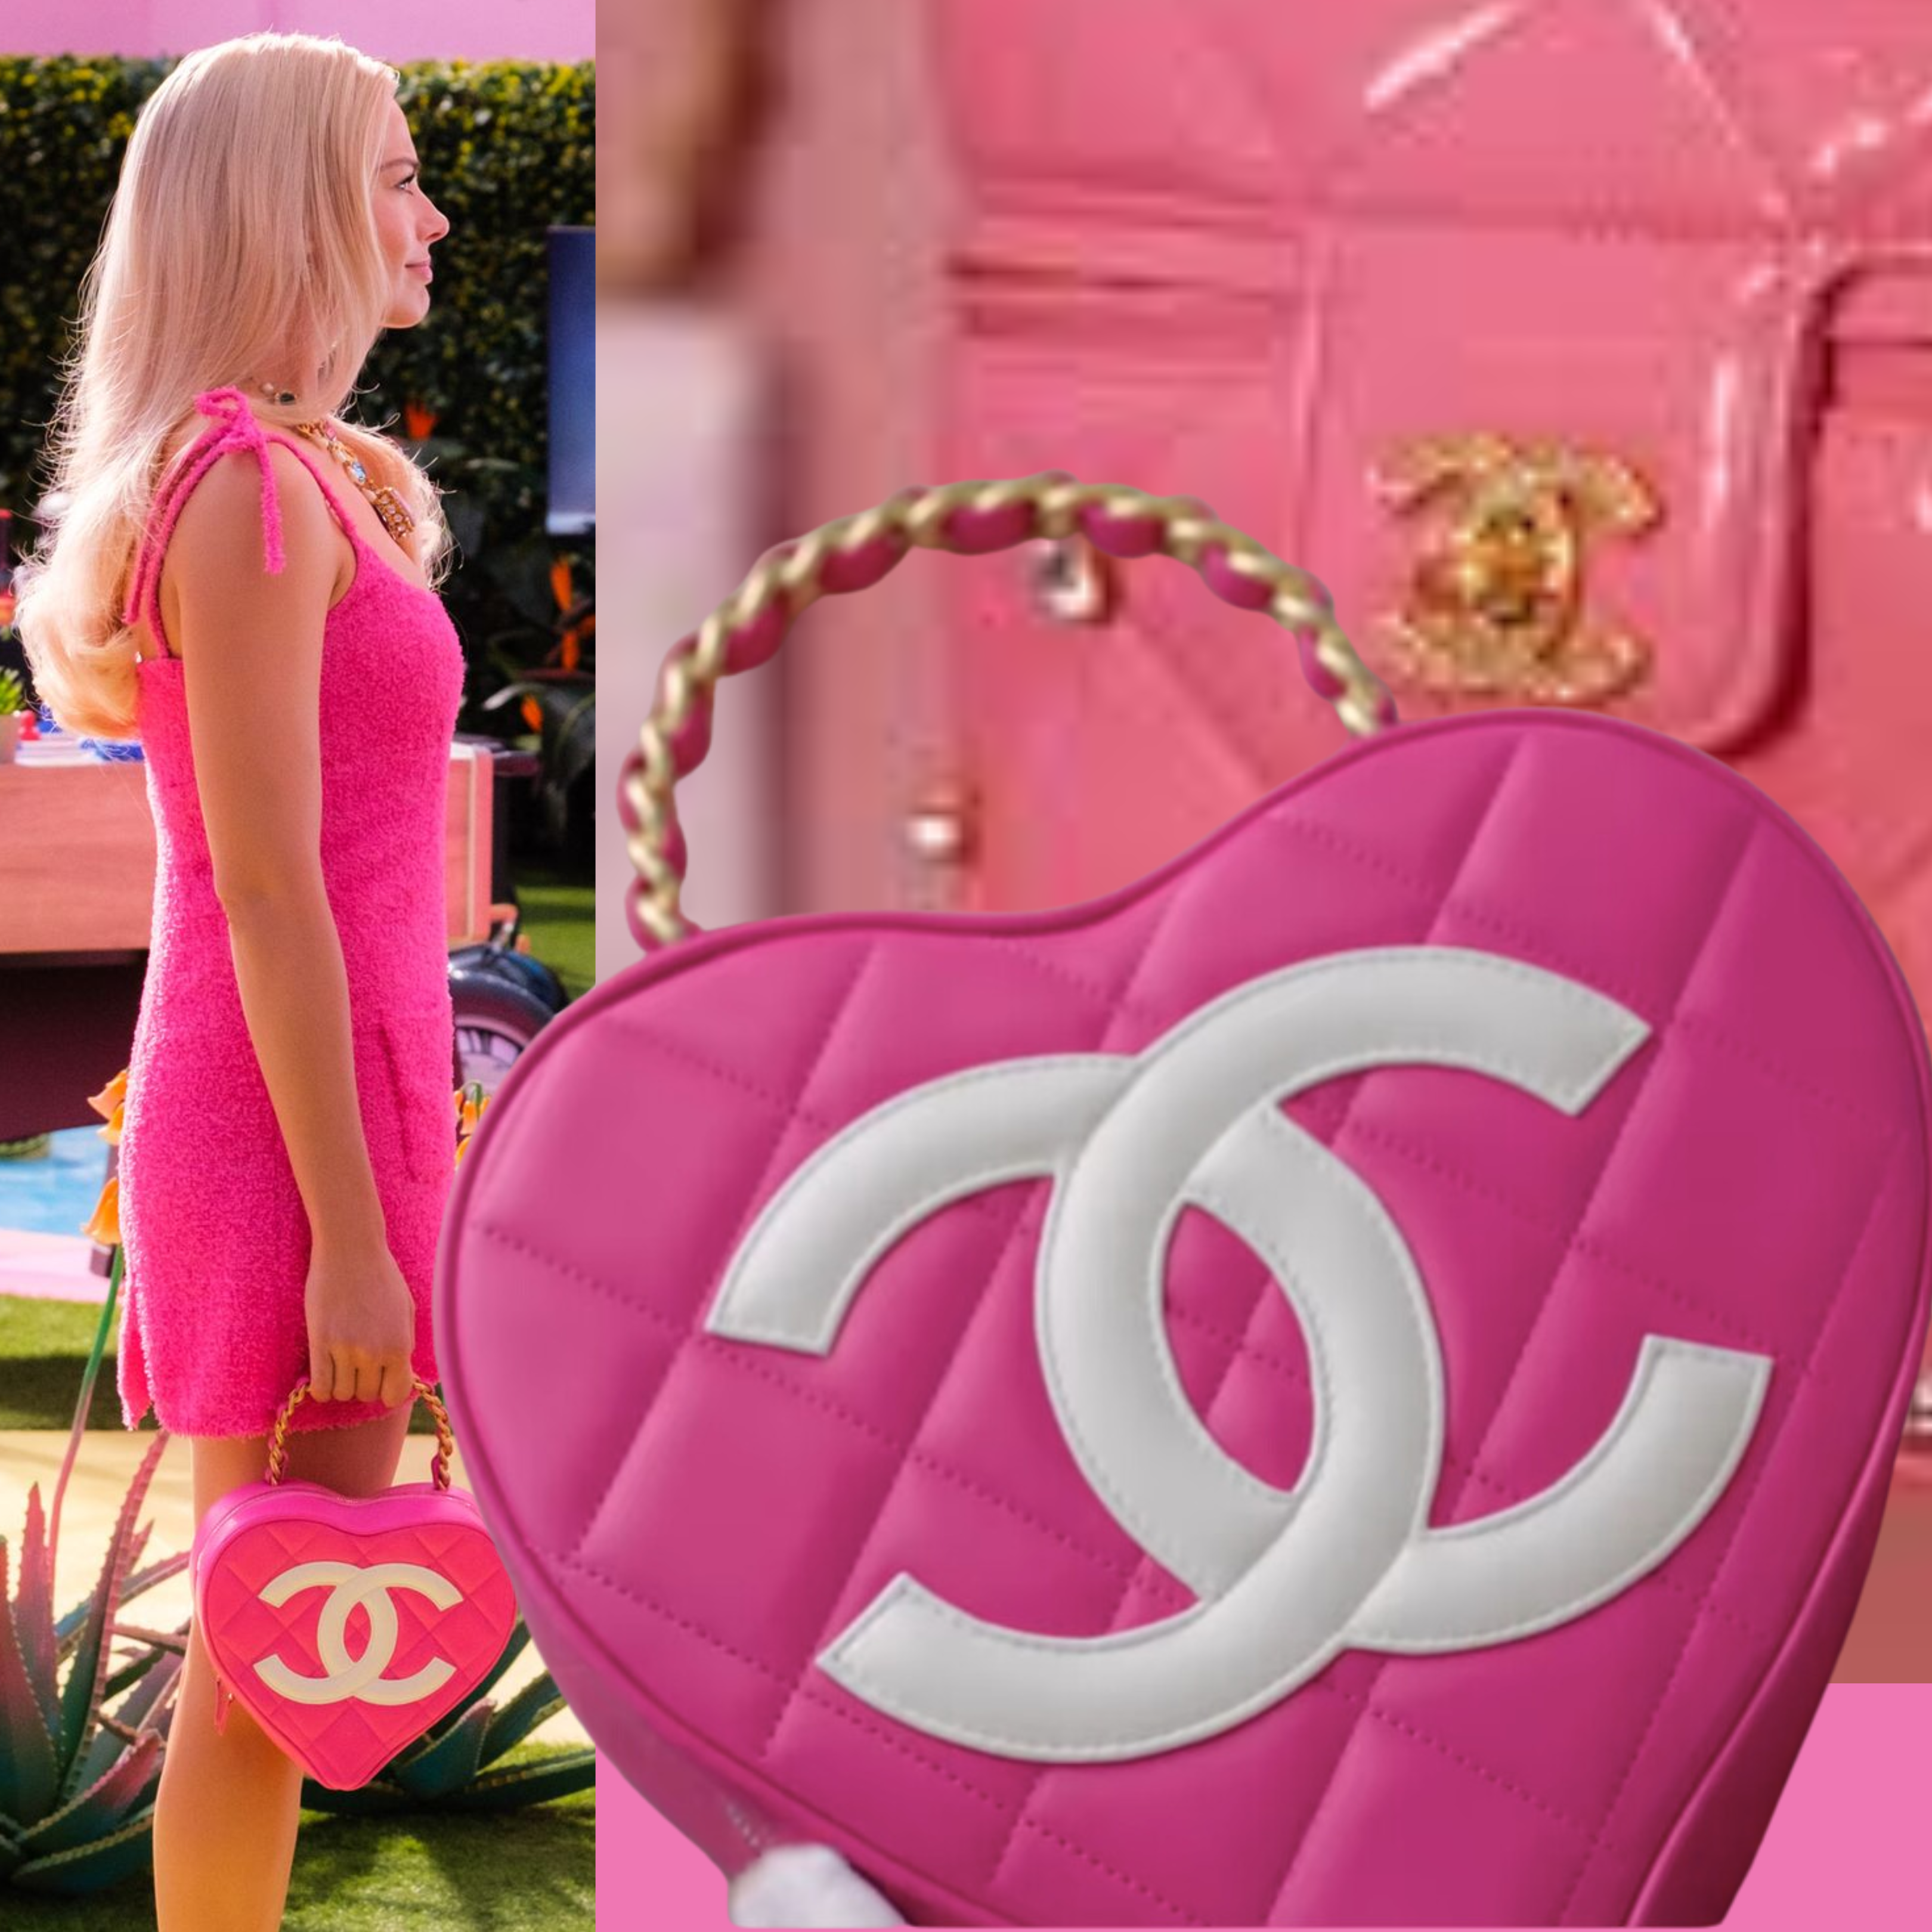 x Barbie Monogram Shopping Tote Bag